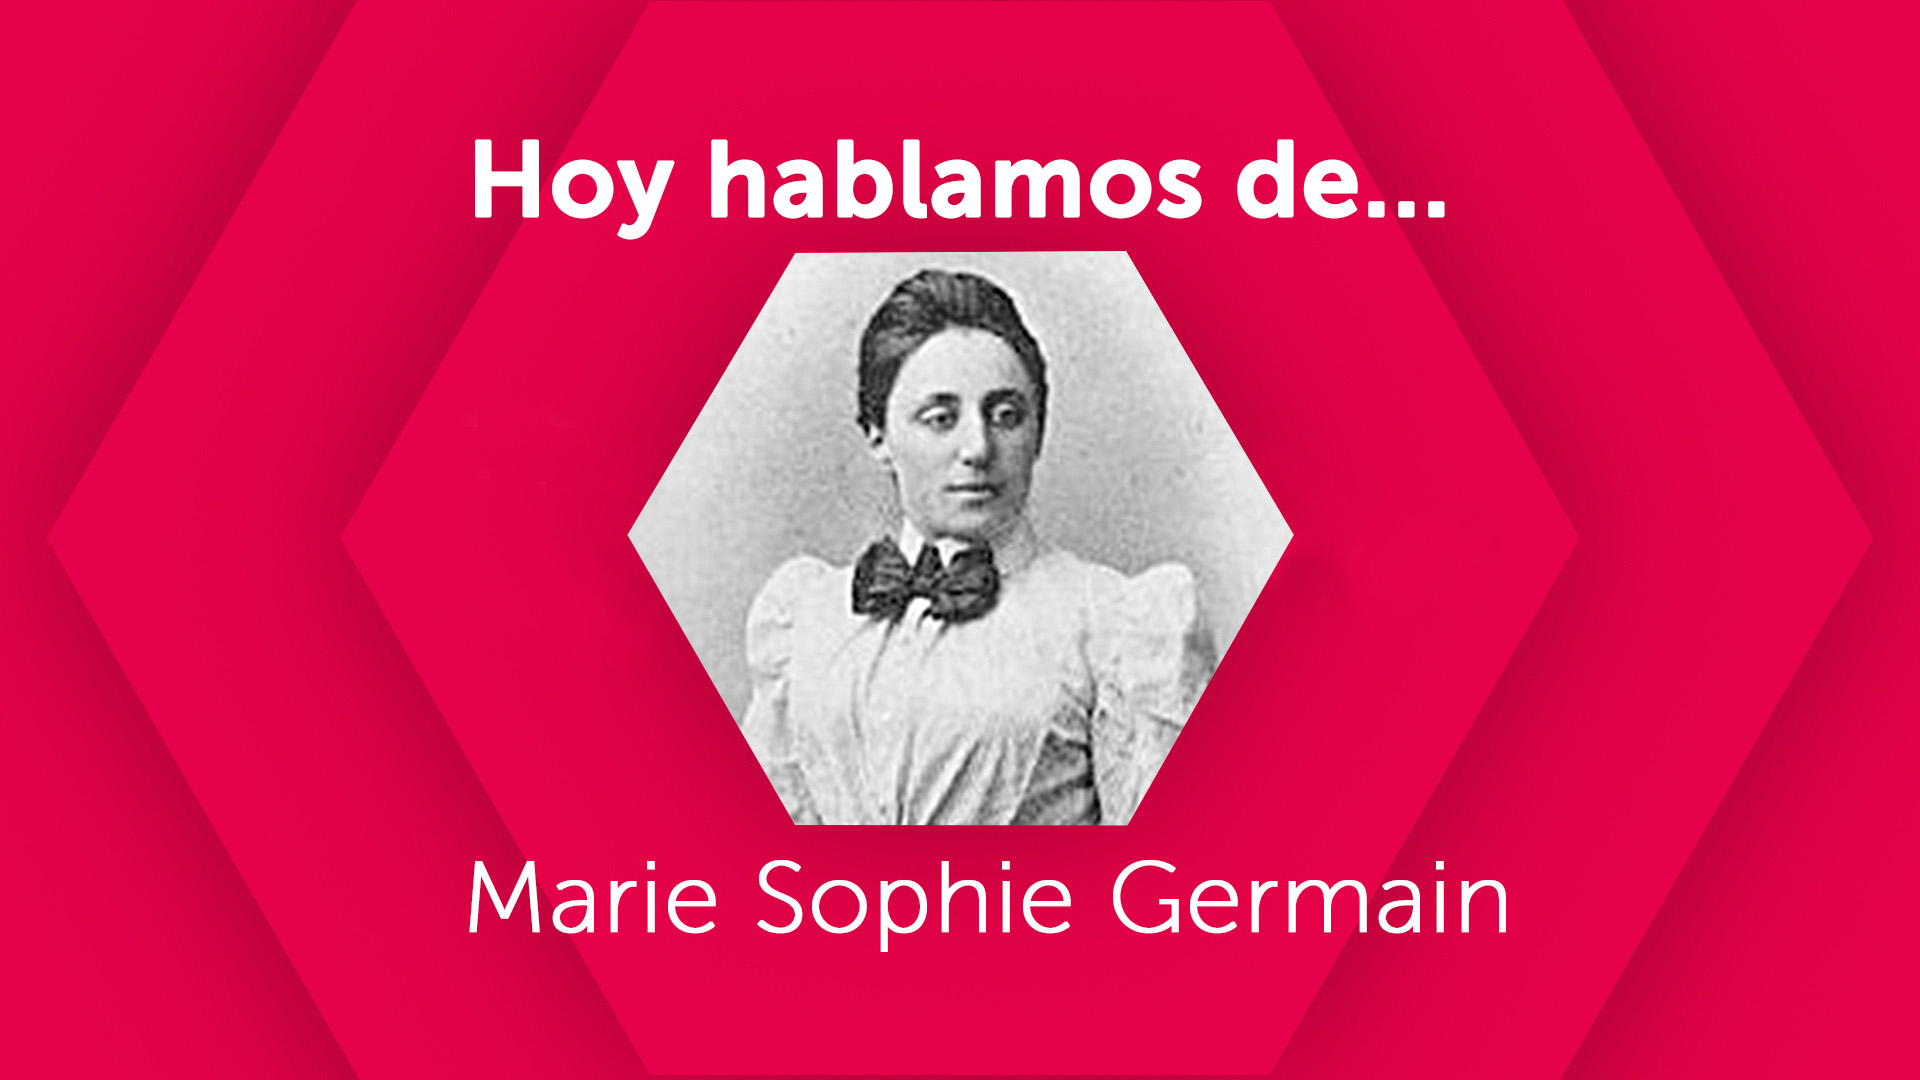 Hoy hablamos de Marie Sophie Germain